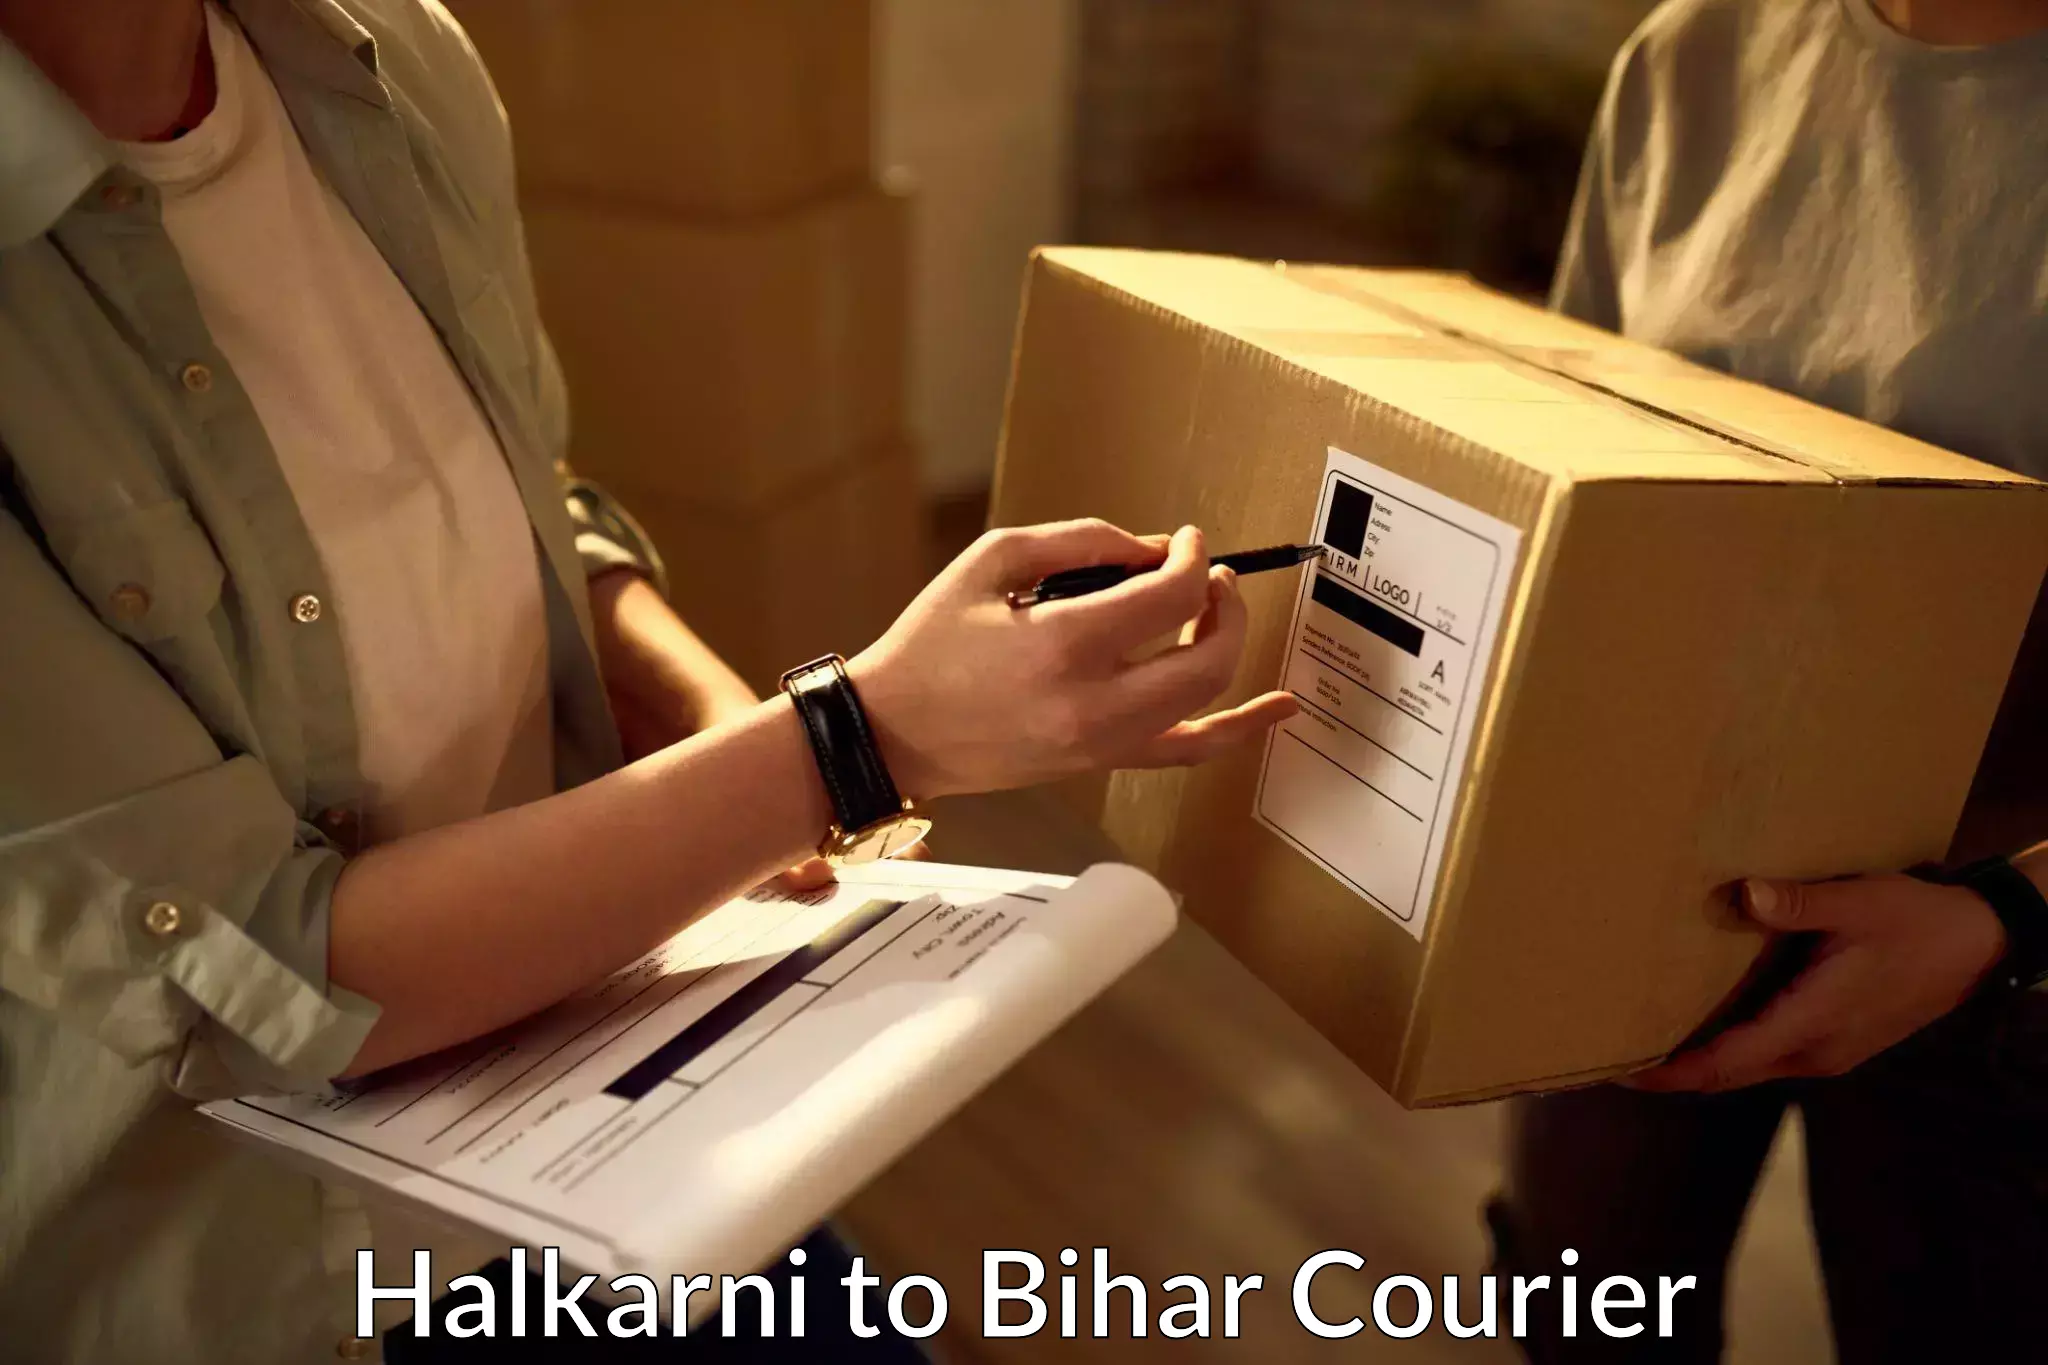 Courier service partnerships Halkarni to Kishunganj